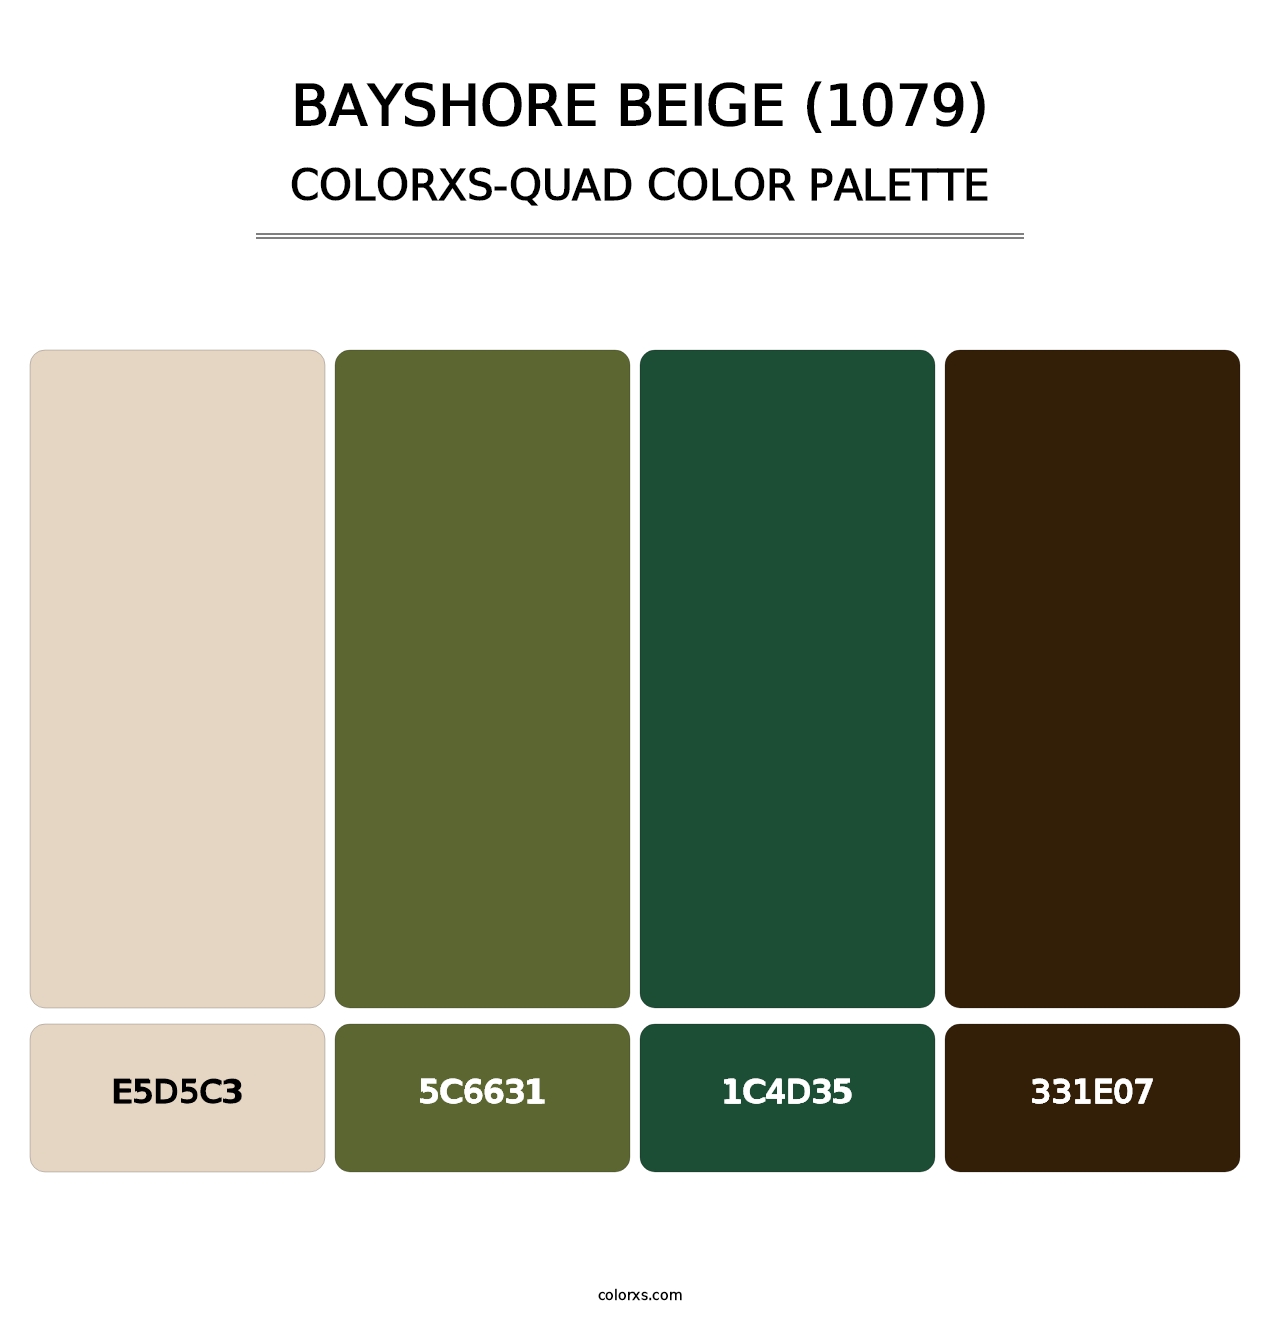 Bayshore Beige (1079) - Colorxs Quad Palette